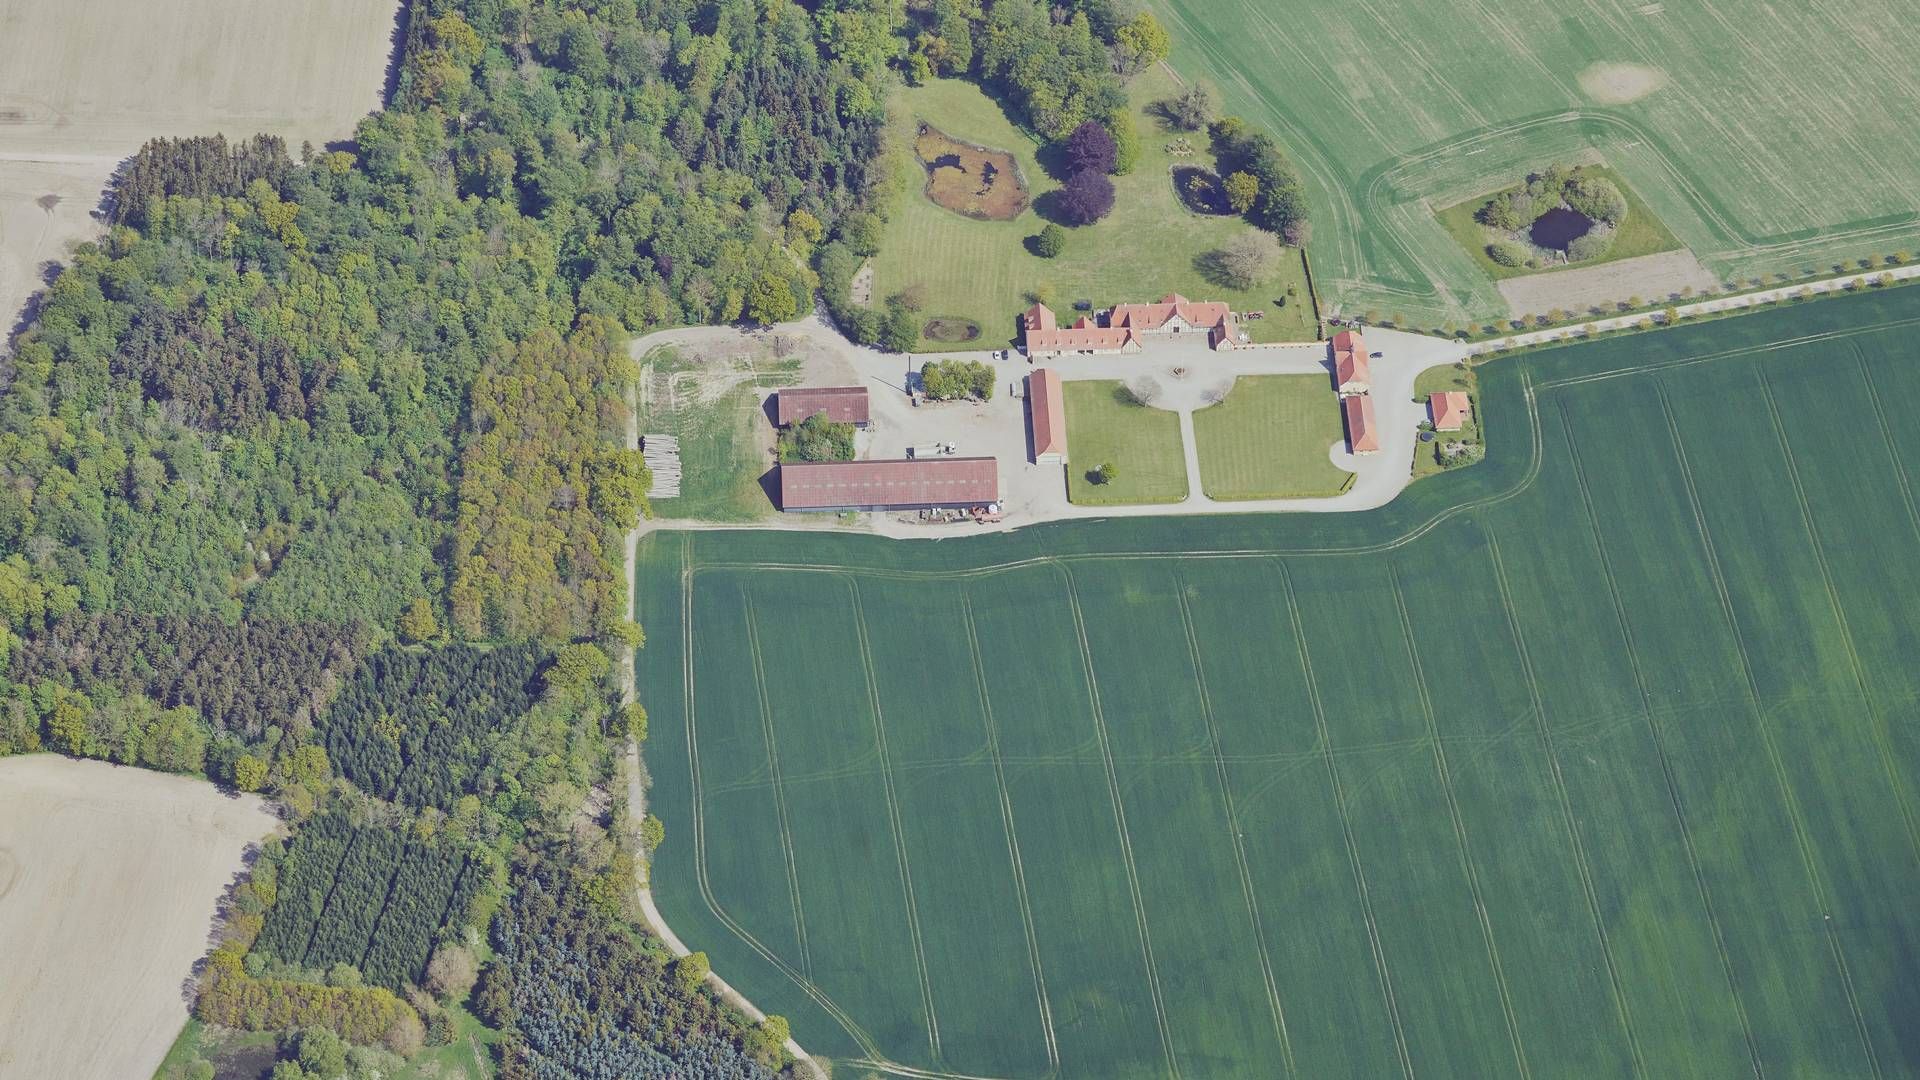 Kejrup Gods på Nordfyn har fået afkræftende konklusion fra revisionen. | Foto: Skråfoto/kortforsyningen.dk